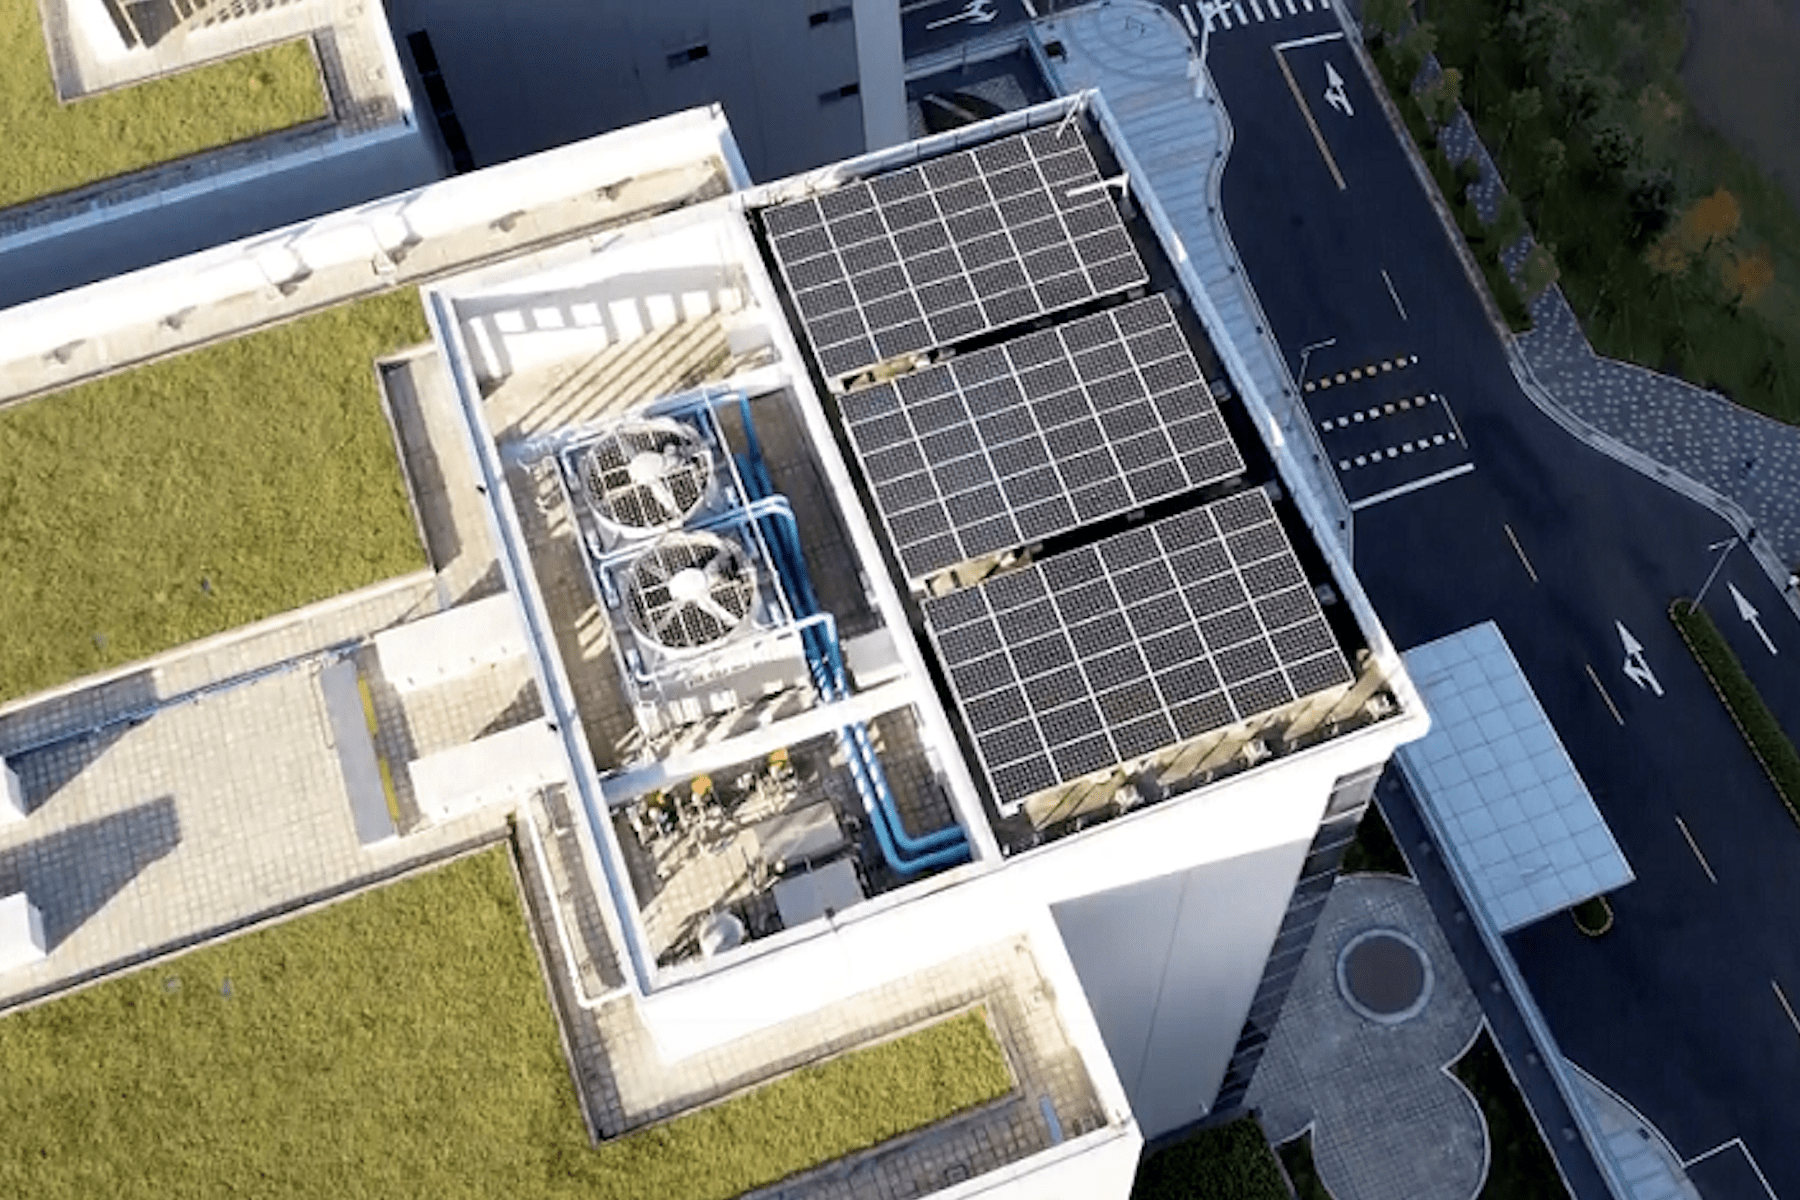 新北市推出6招節能政策     太陽光電補助4月1日啟動     迎向綠能新未來